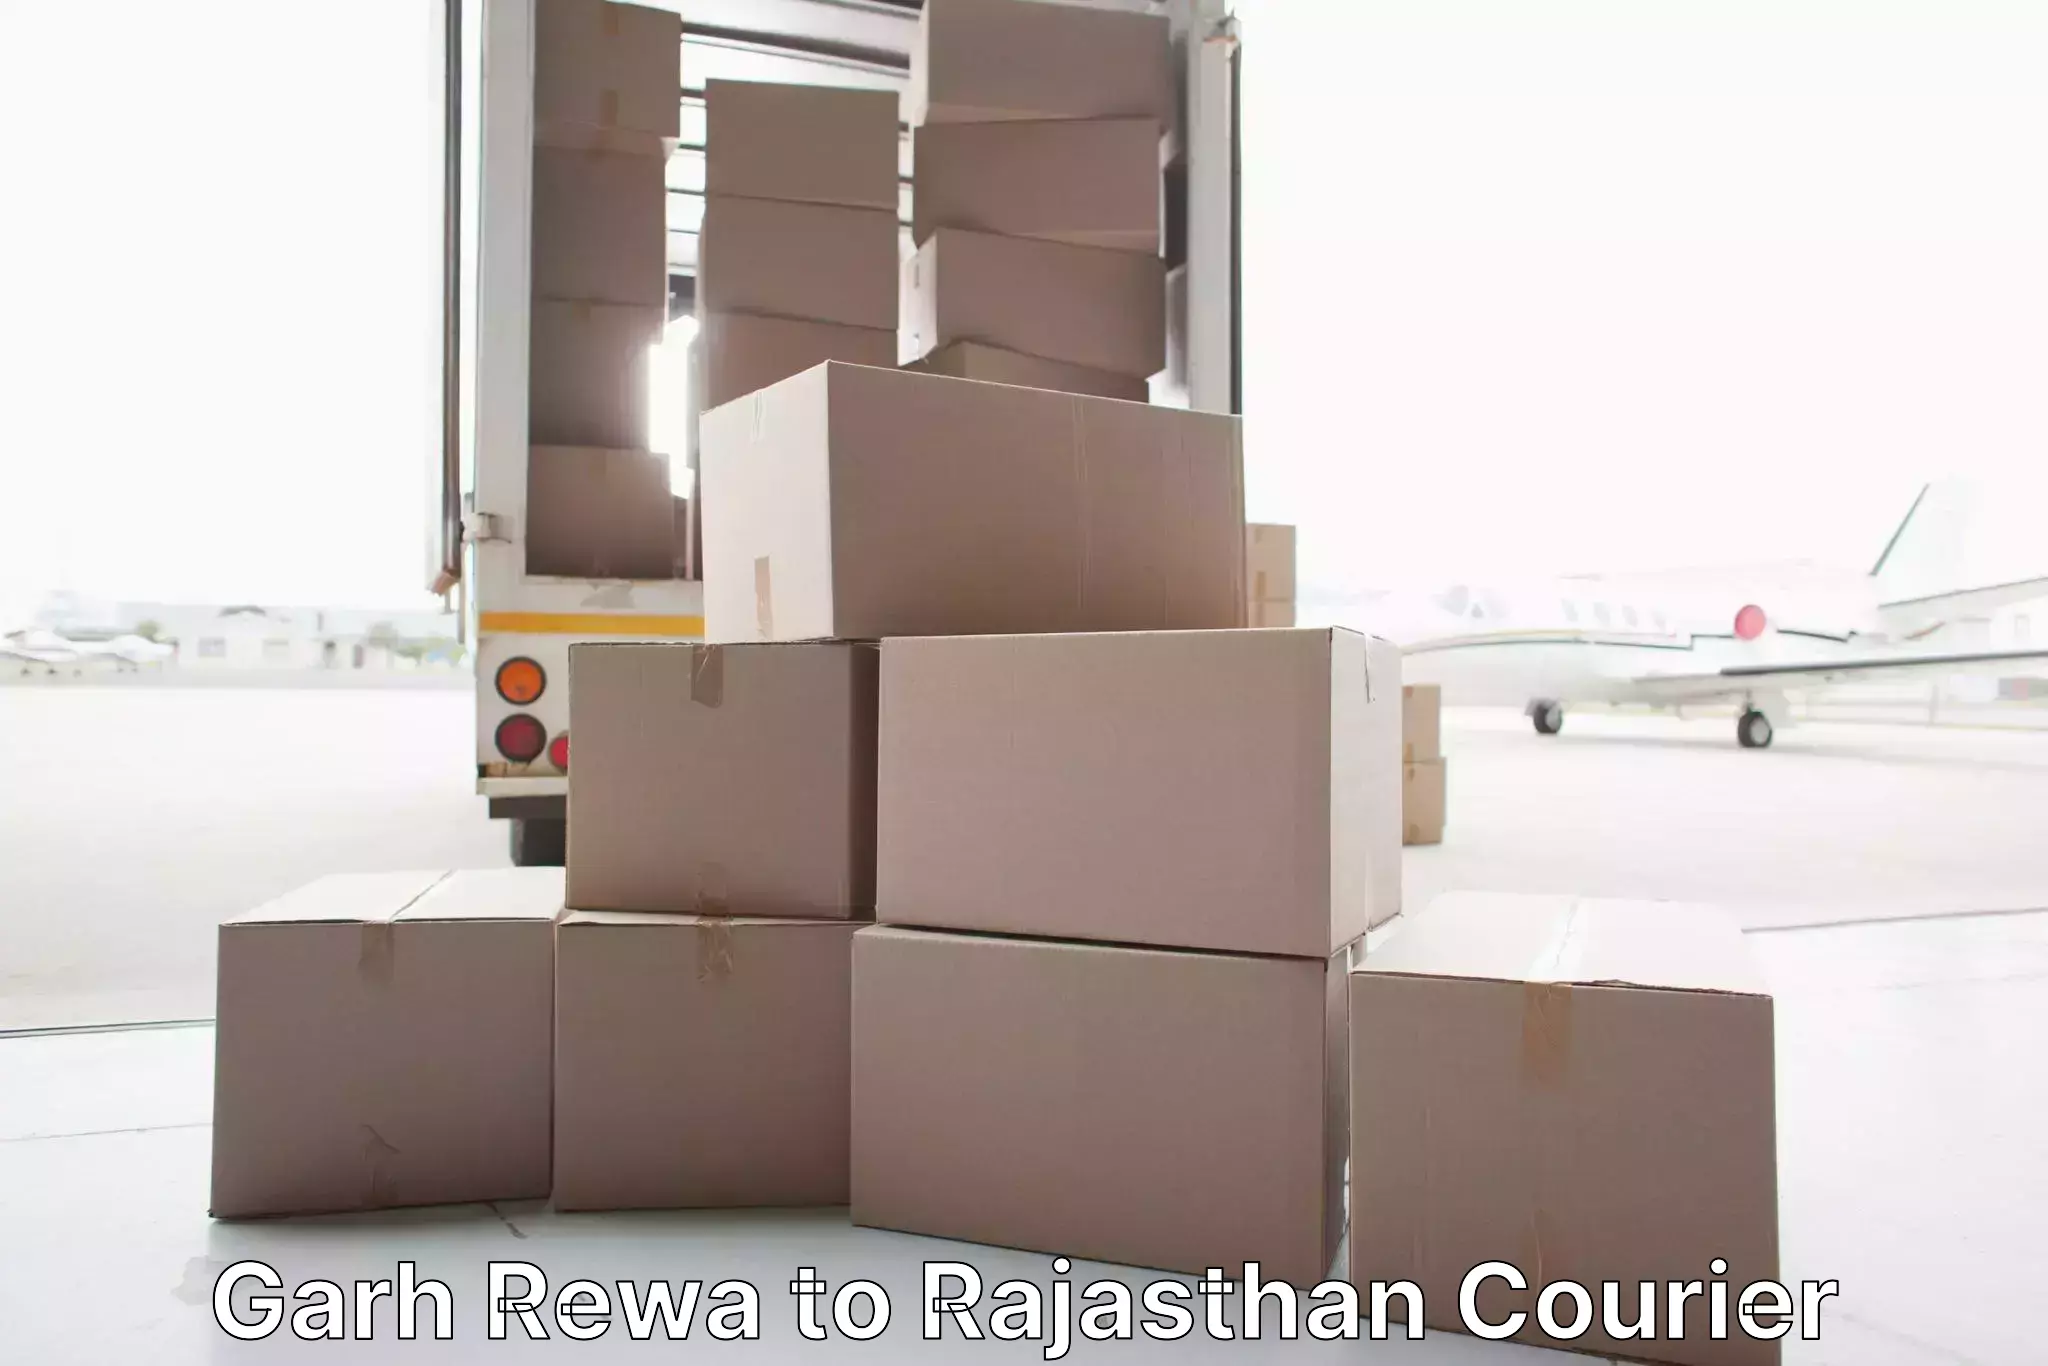 Furniture moving experts Garh Rewa to Phalodi